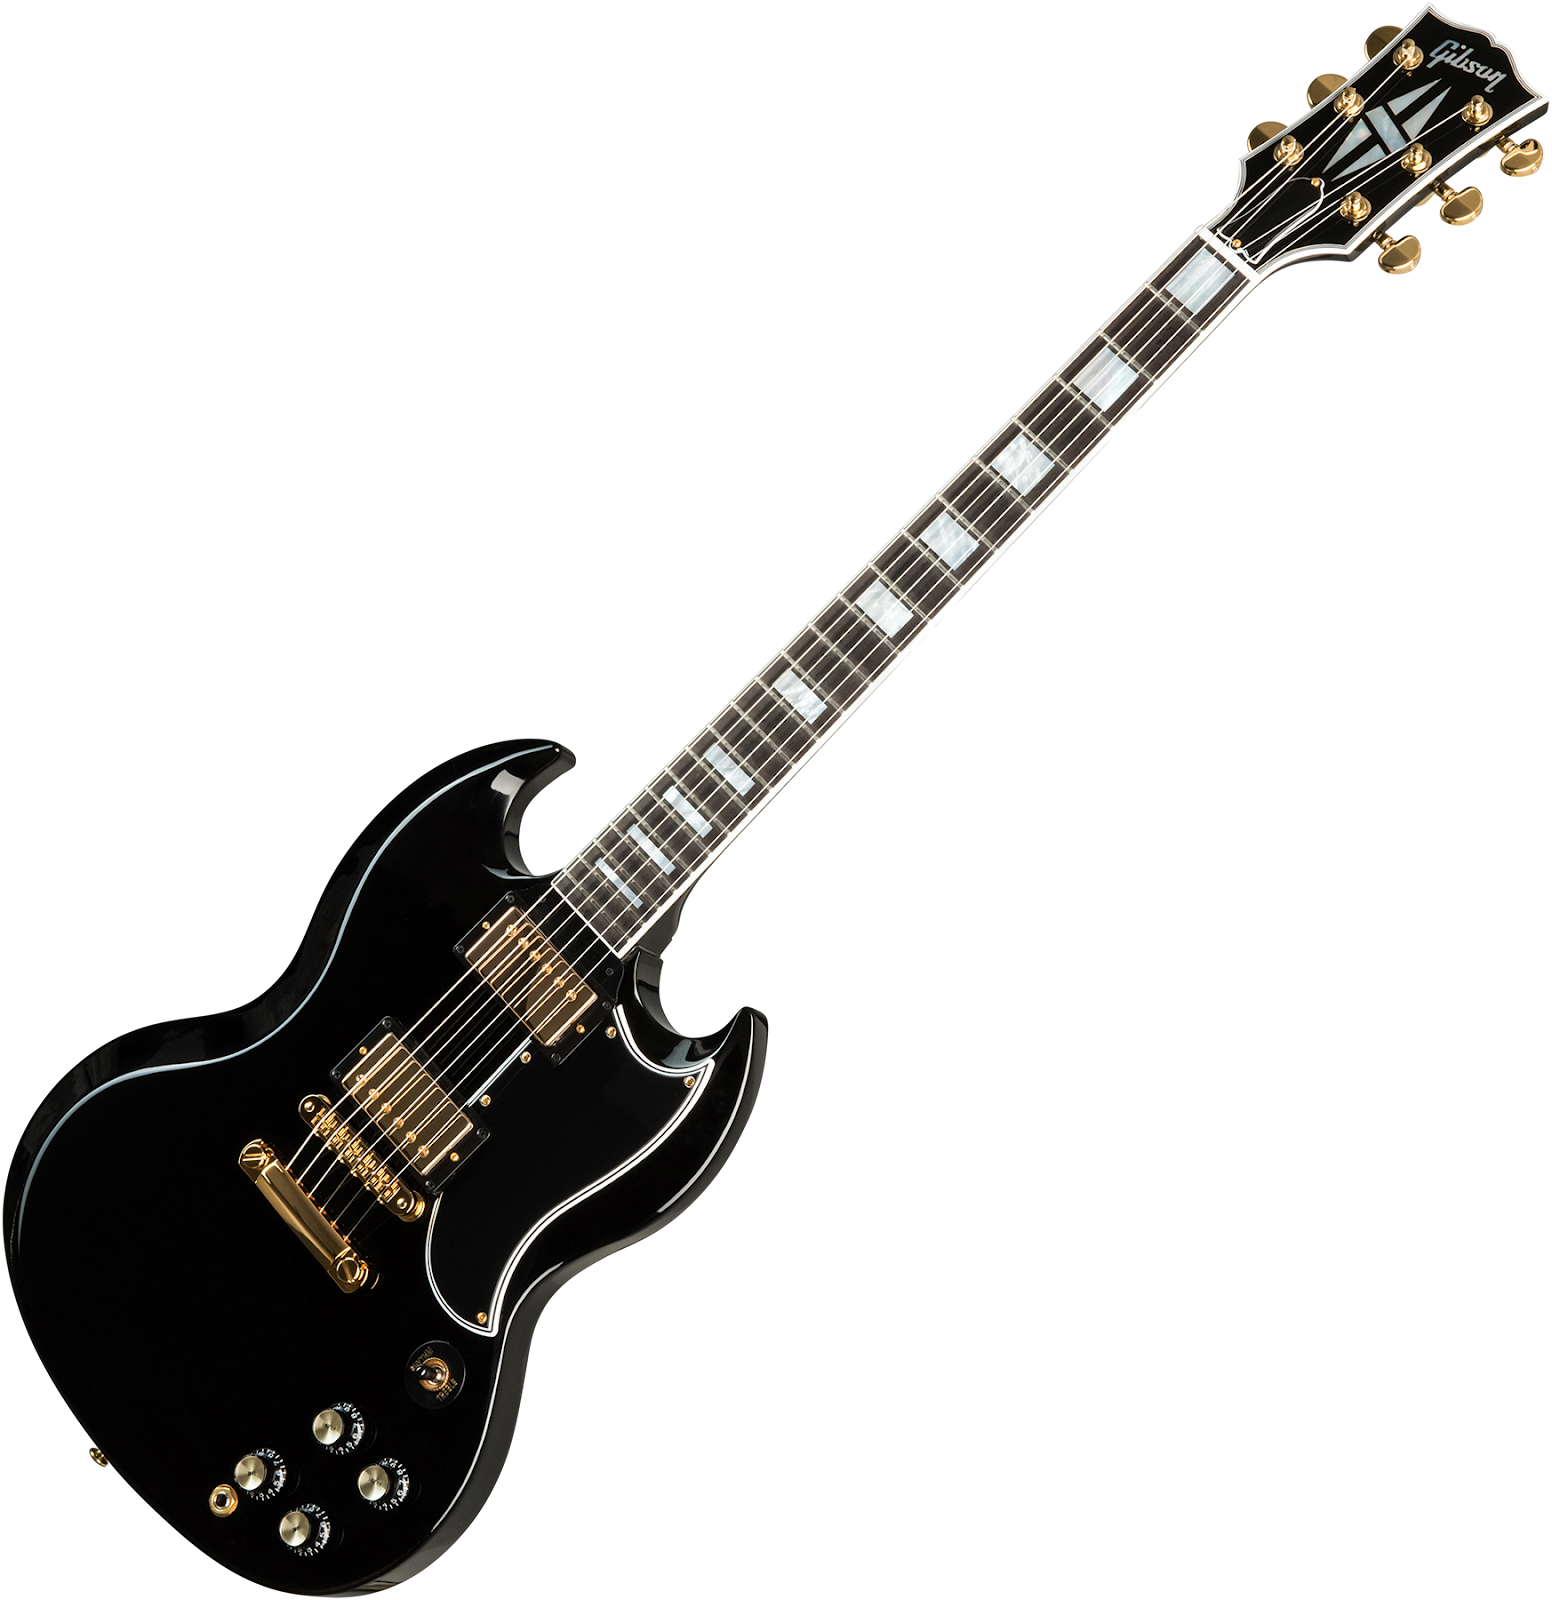 Gibson SG ชื่อนี้ ใครก็ต้องรู้จัก 4